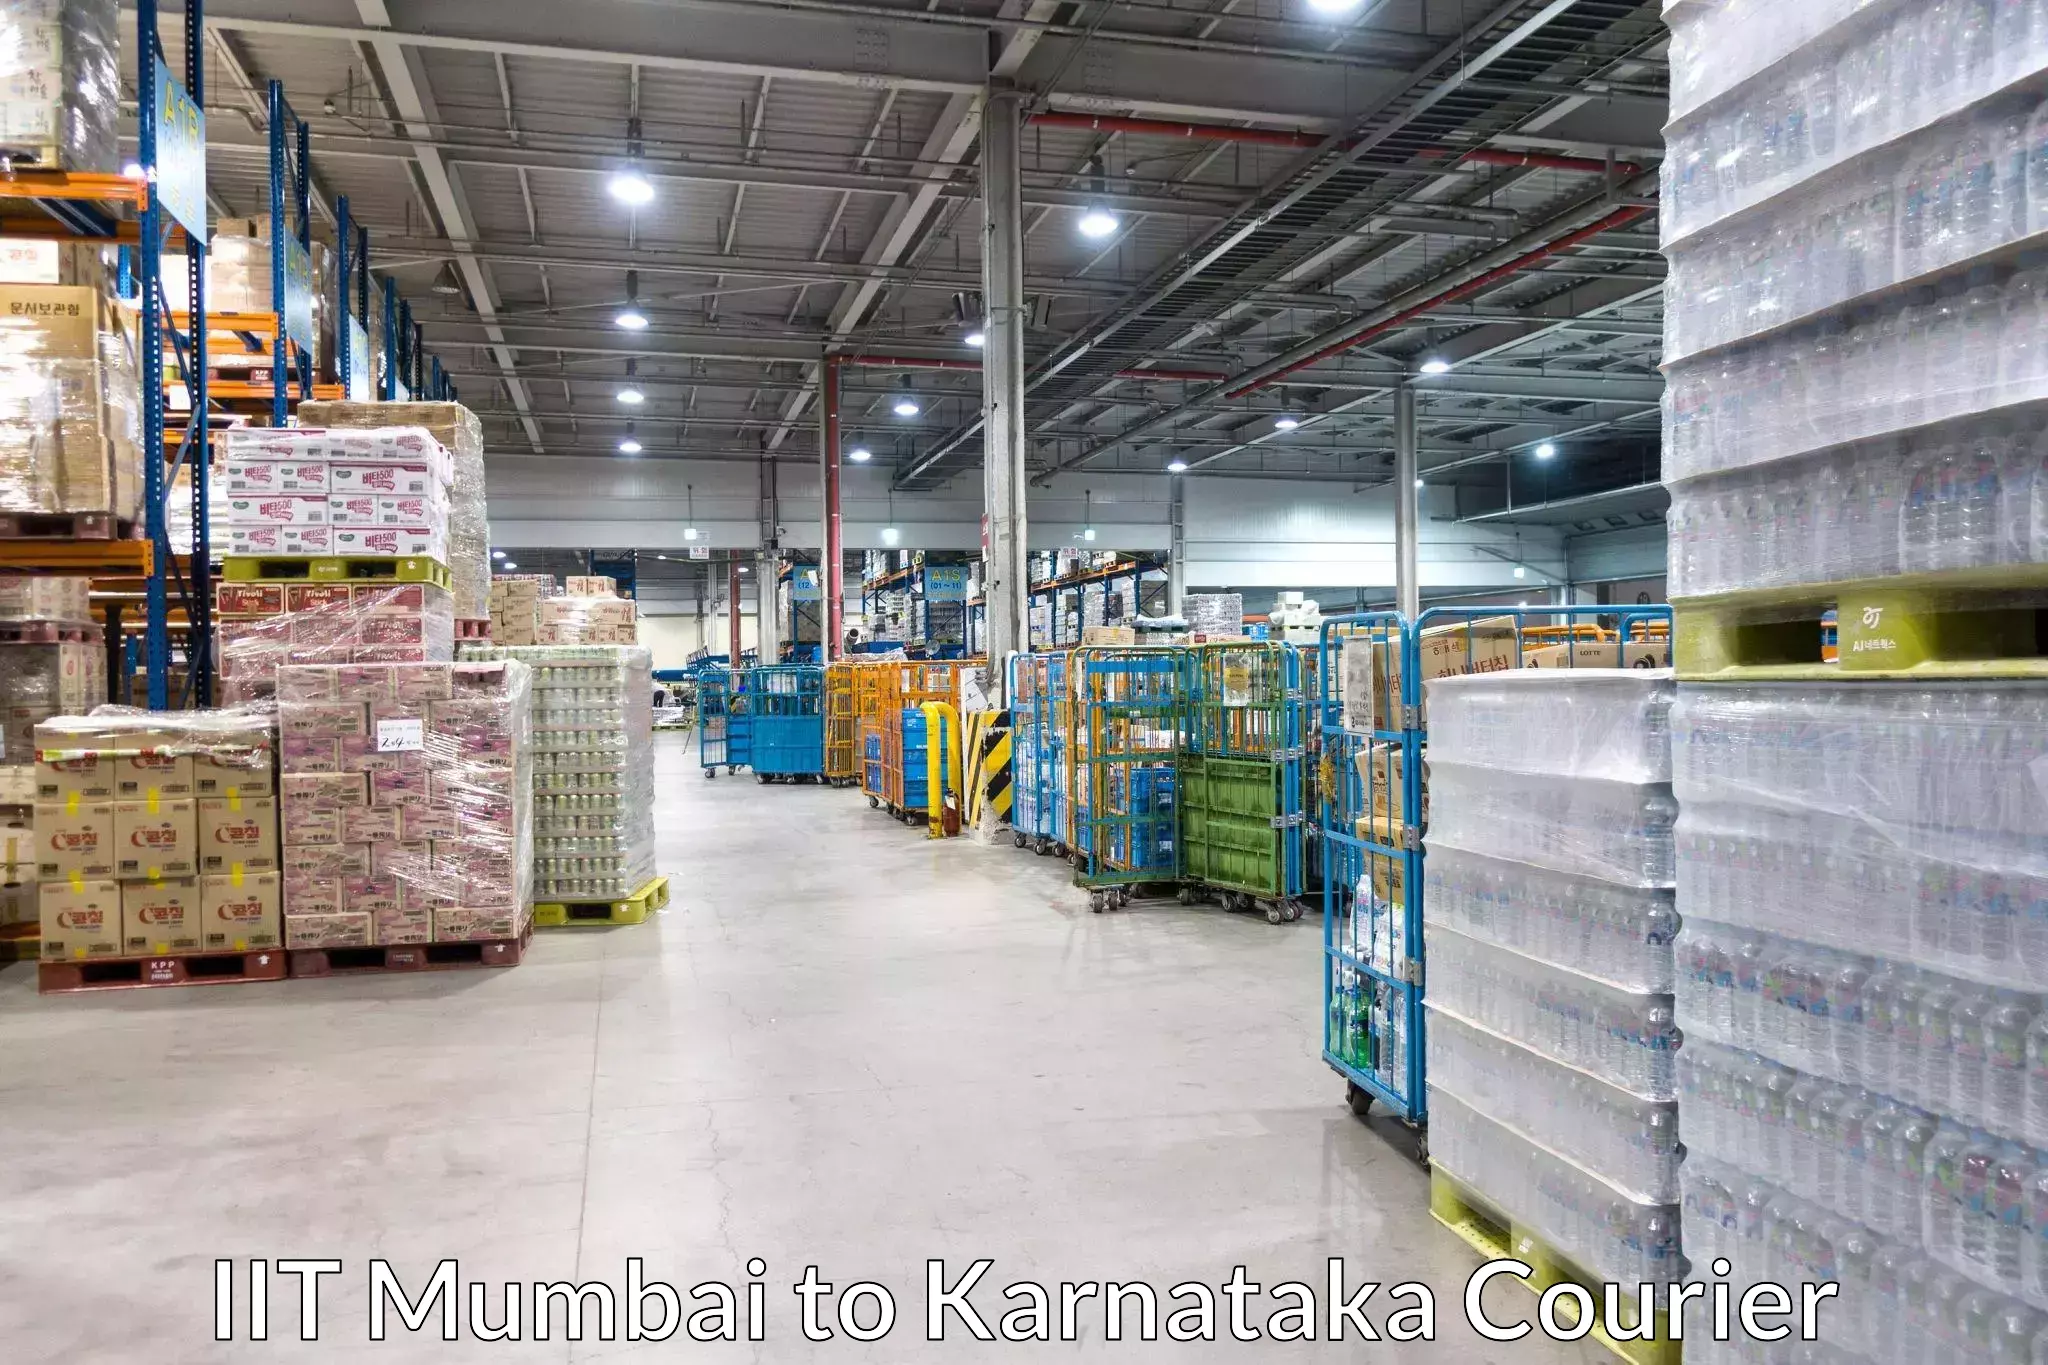 Cargo delivery service IIT Mumbai to Kudligi